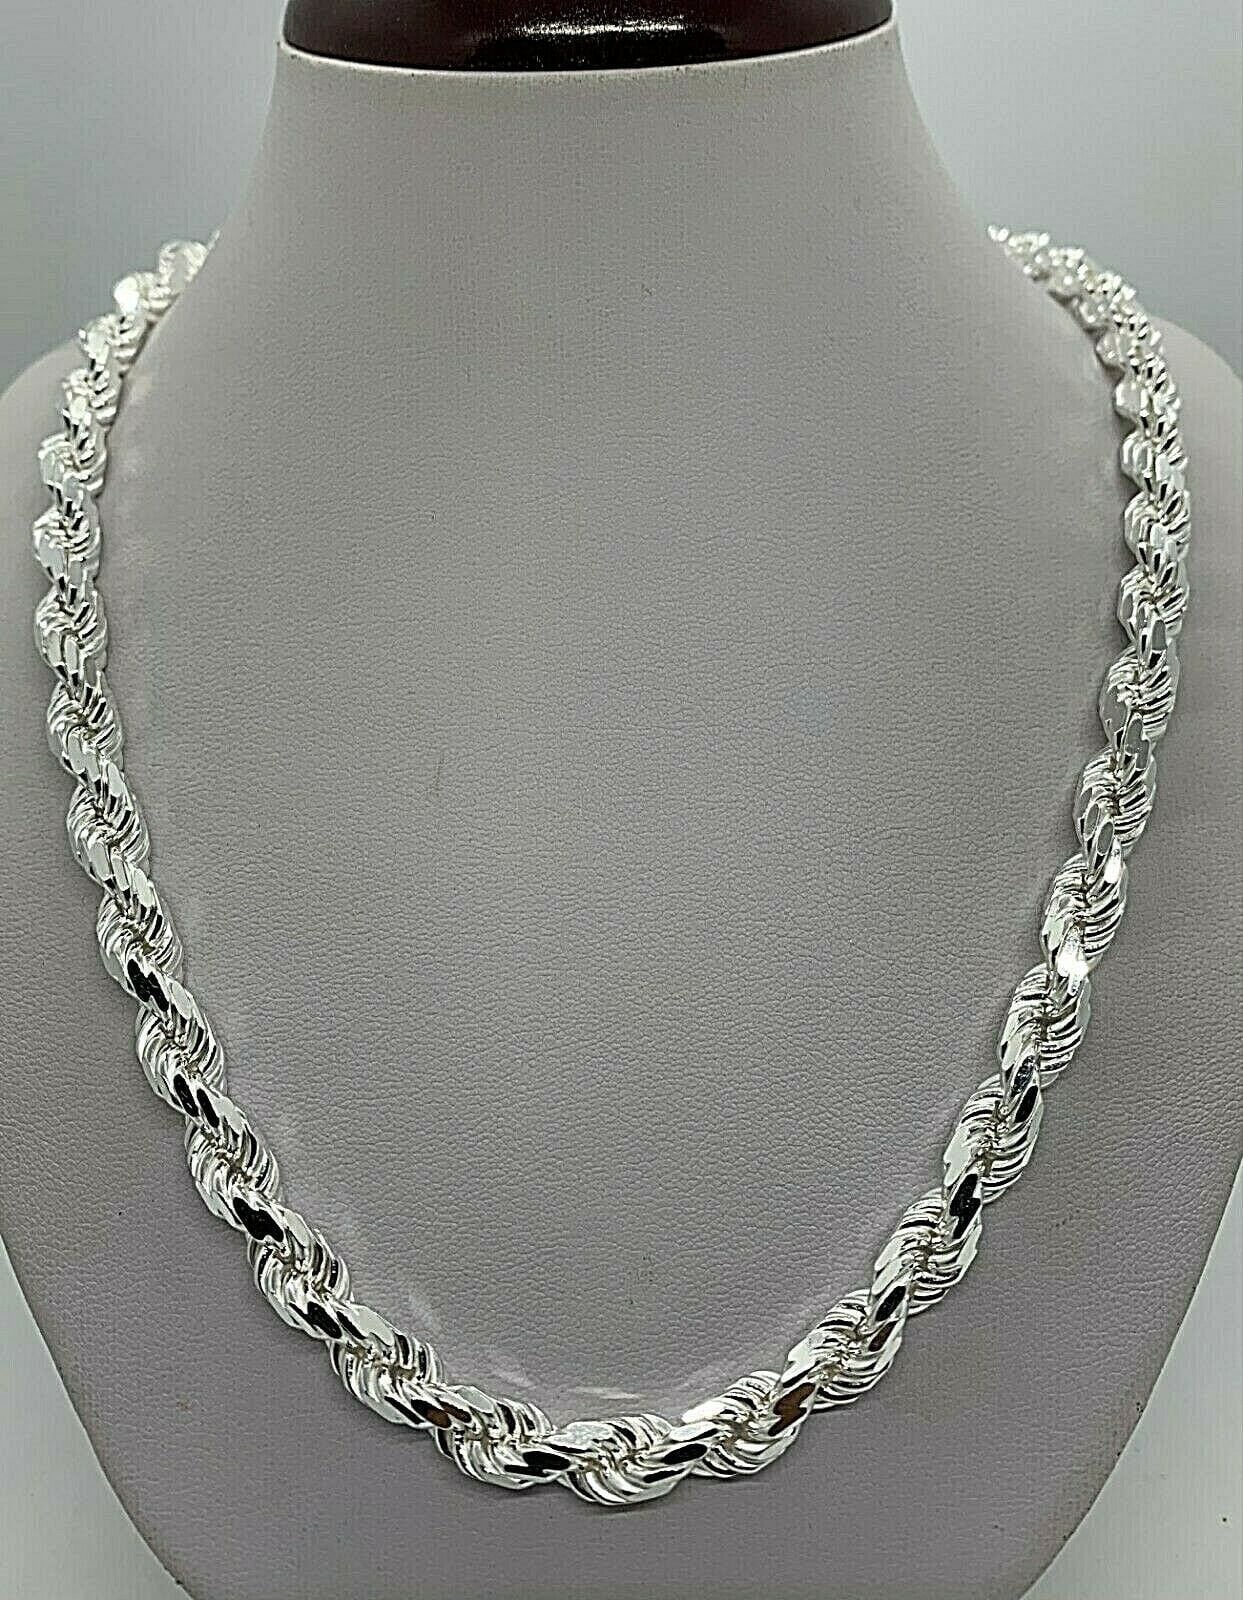 Premium Louis Vuitton Men'S Chain Link Silver Tone Engraved